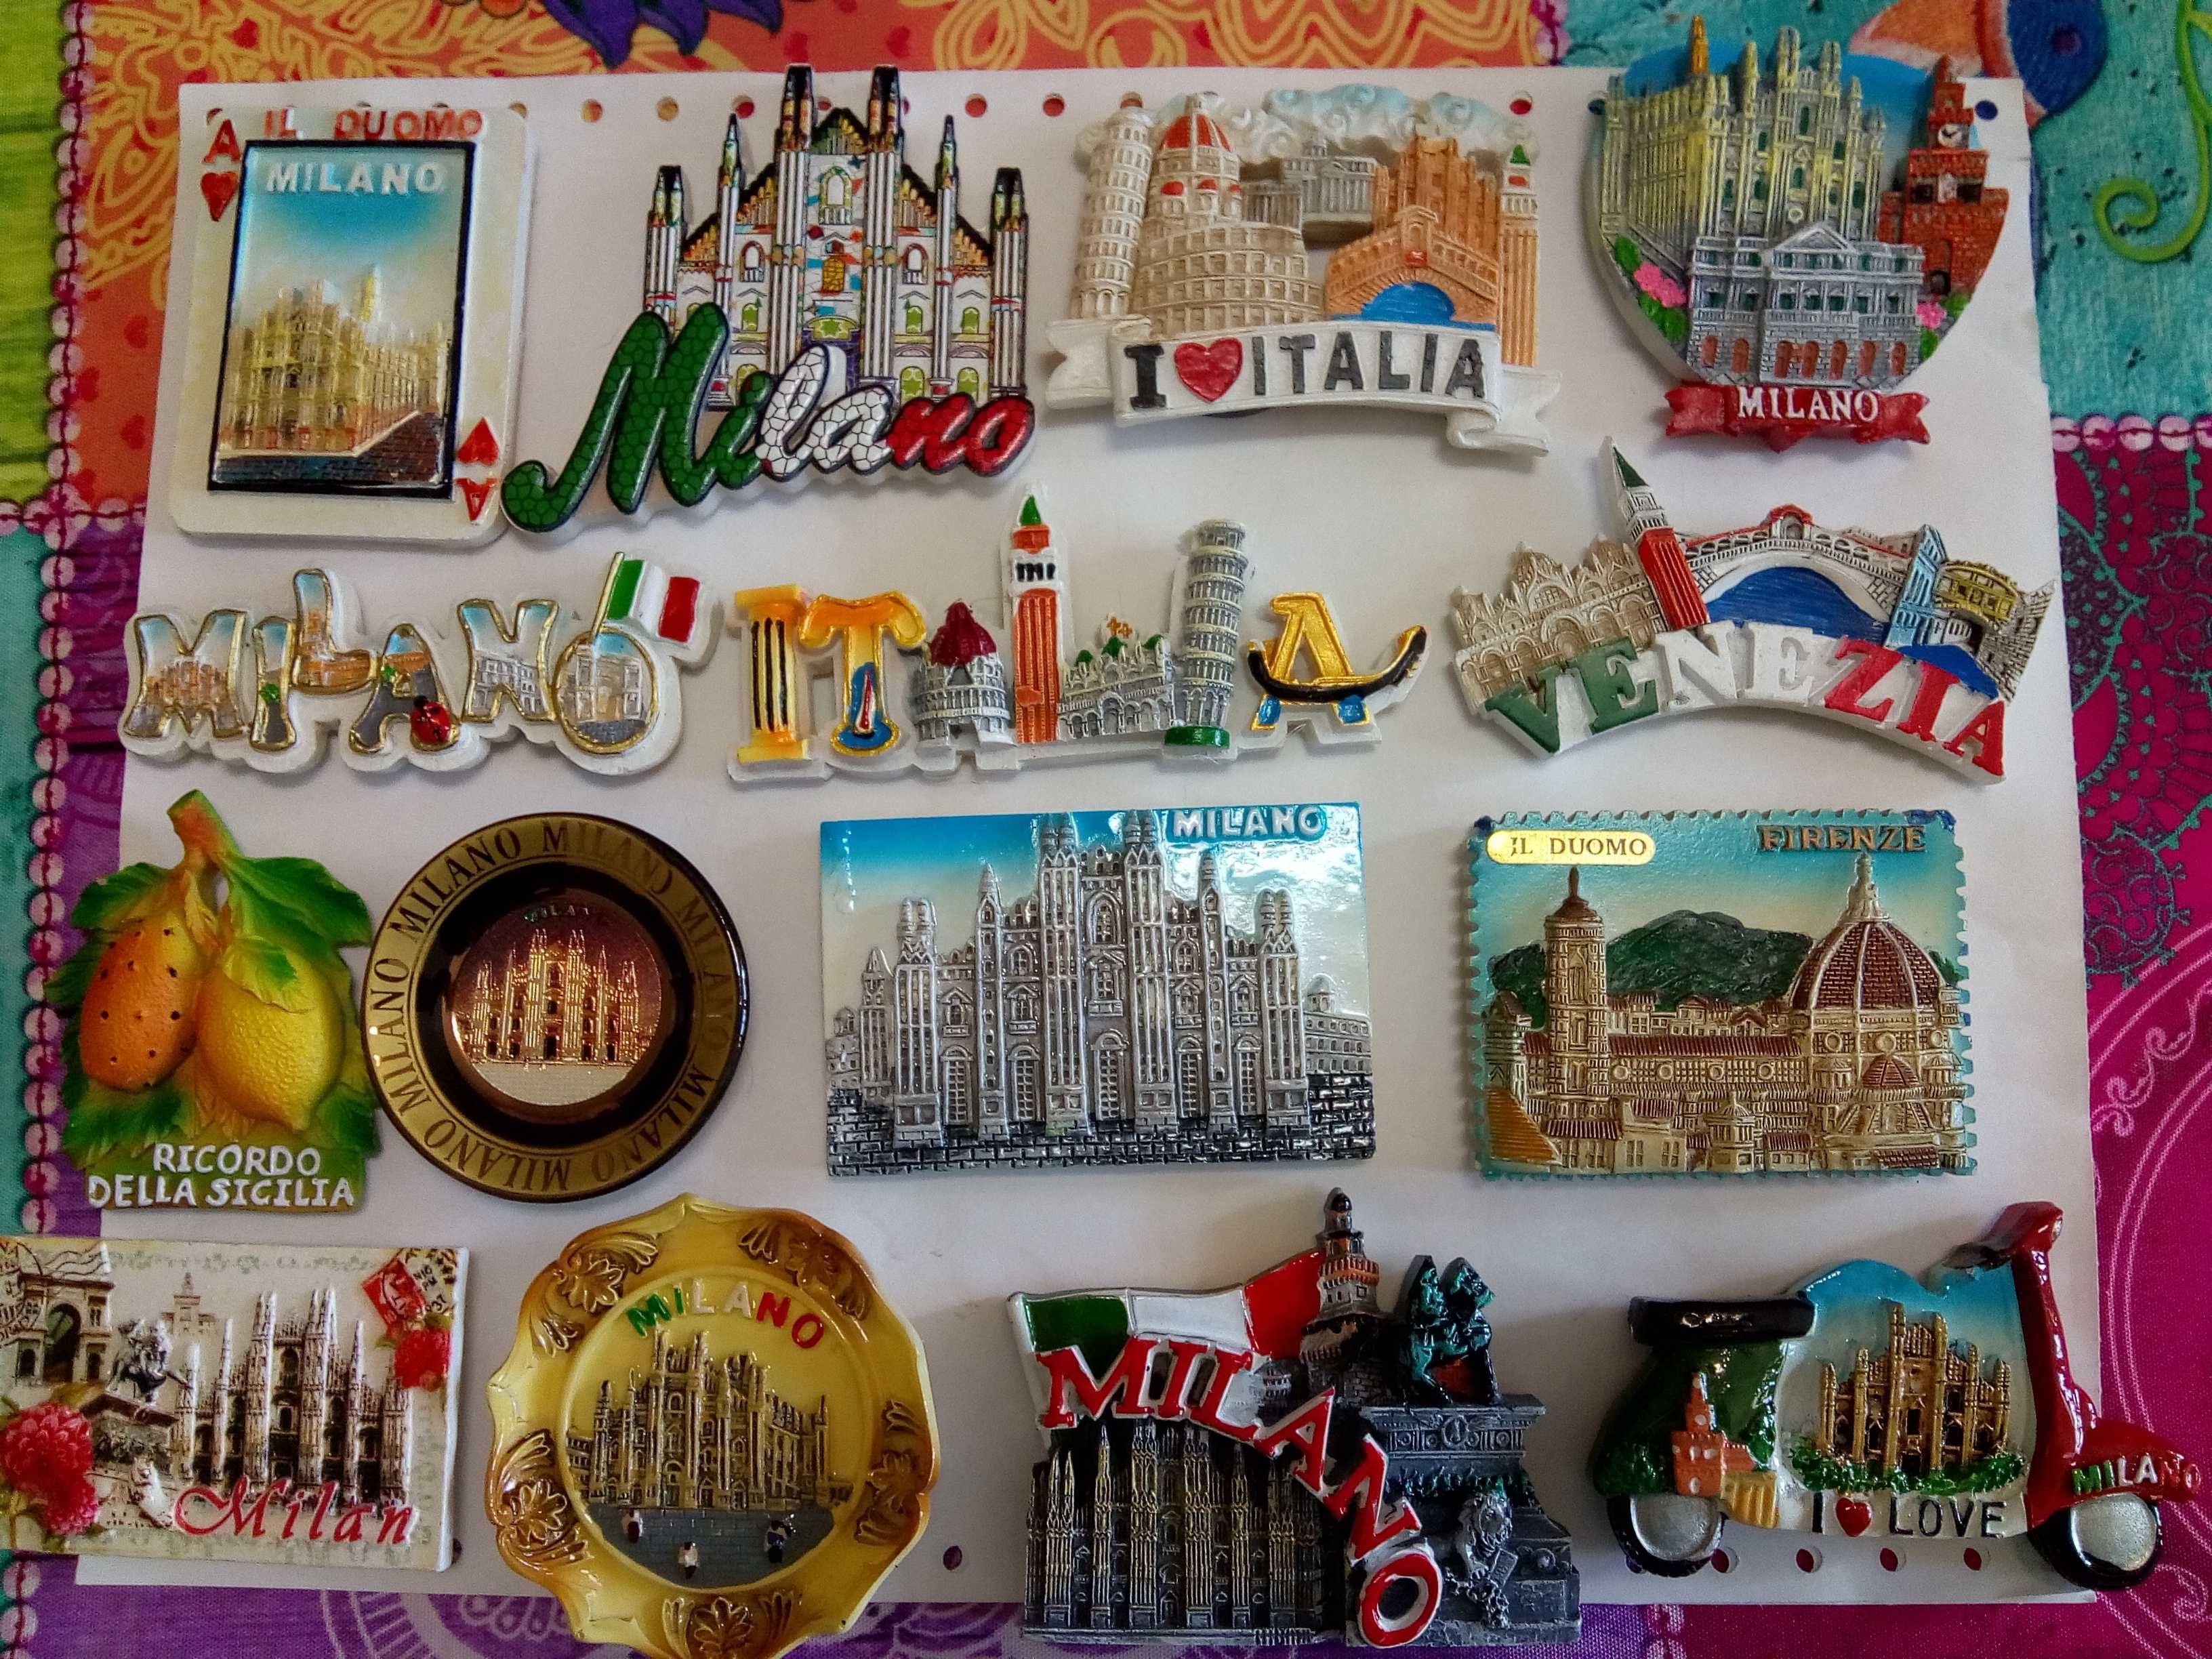 Imanes magnets de Itália vendo 1.99€